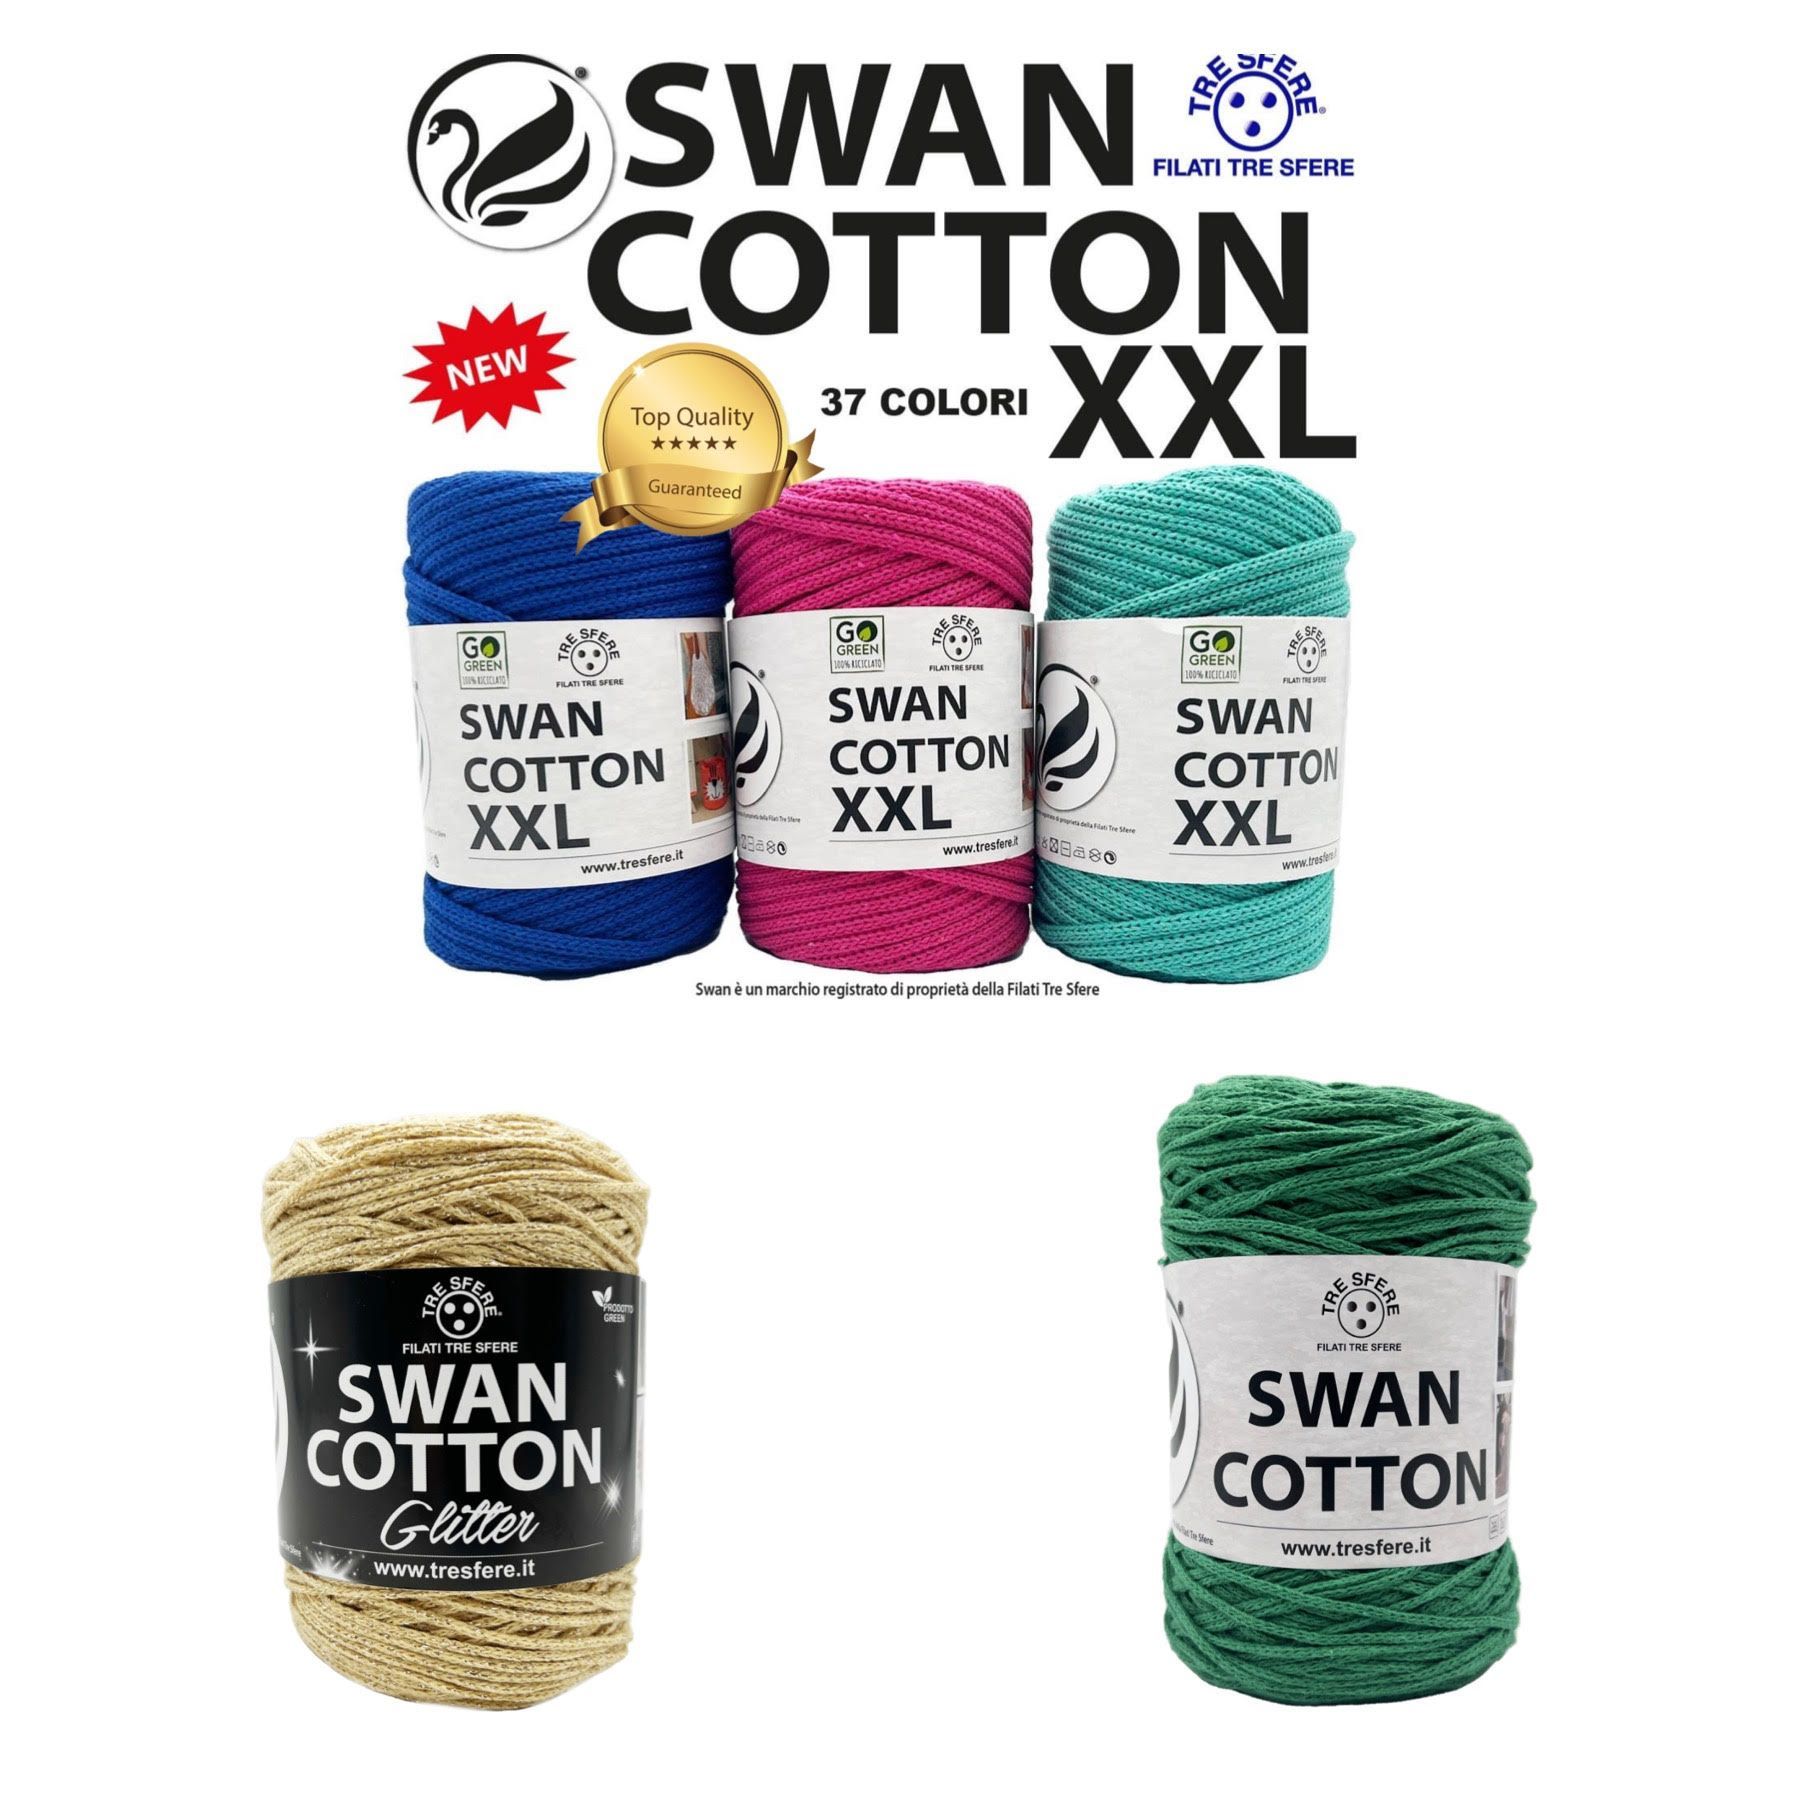 cordino swan cotton riciclato filati tre sfere